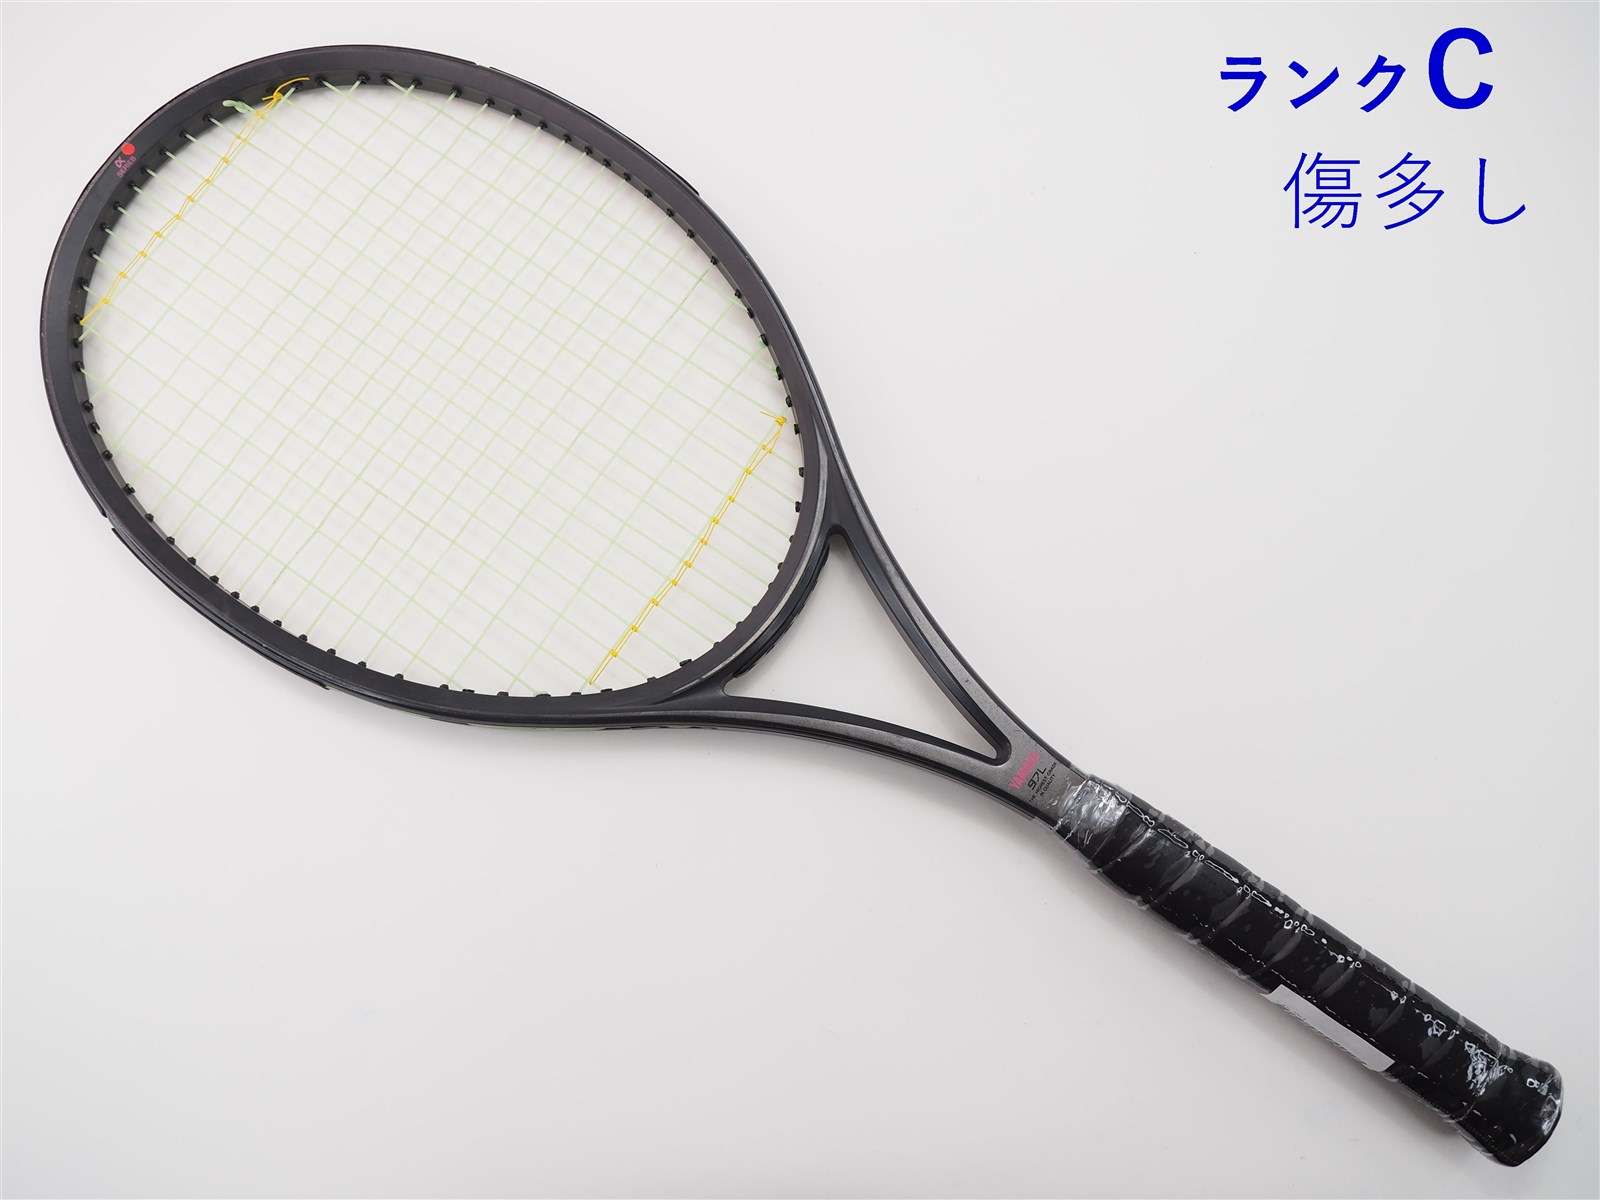 中古】ヤマハ アルファ-97LYAMAHA a-97L(XSL2)【中古 テニスラケット 